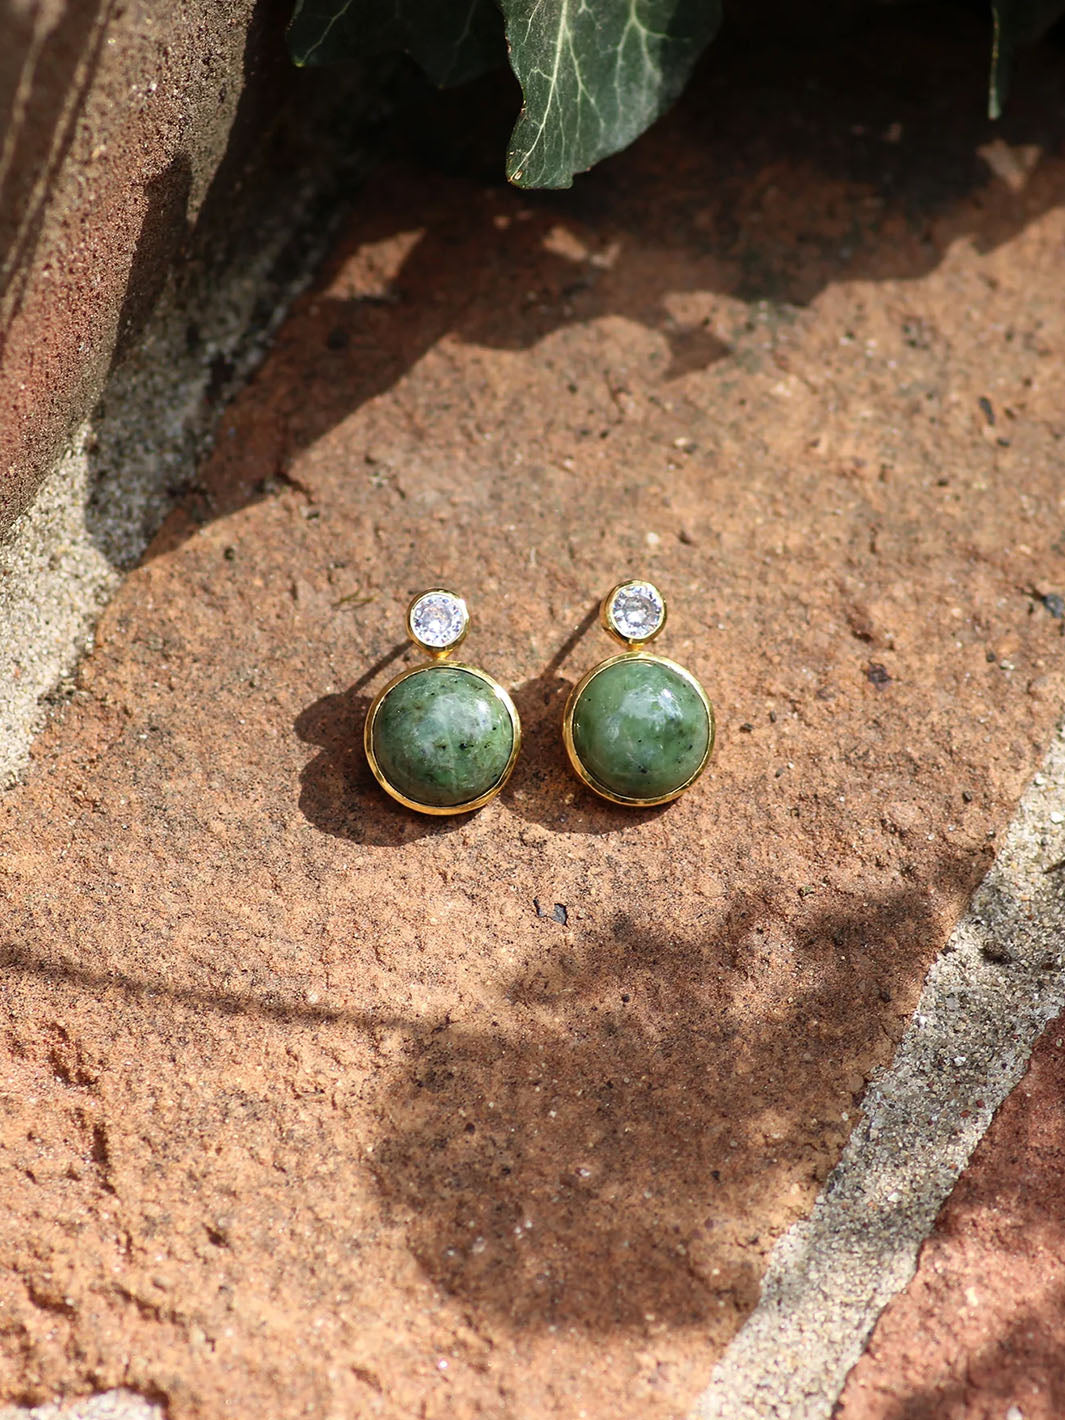 Floating Gem Stud Earrings in Nephrite Jade